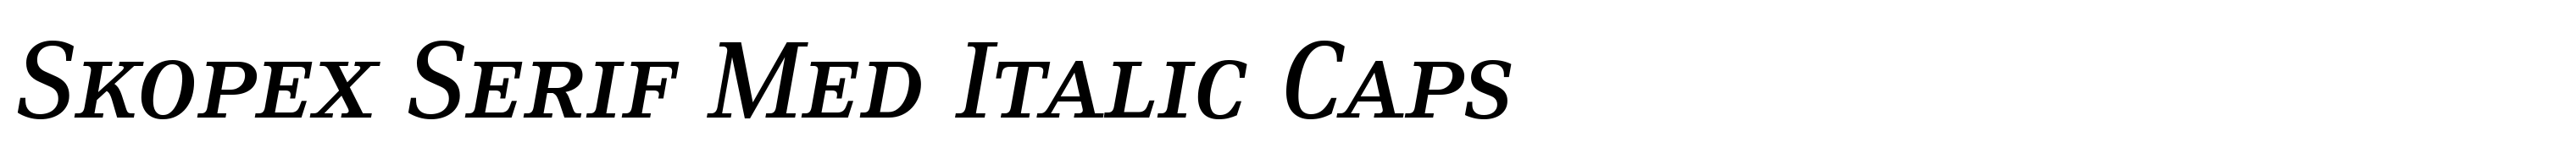 Skopex Serif Med Italic Caps